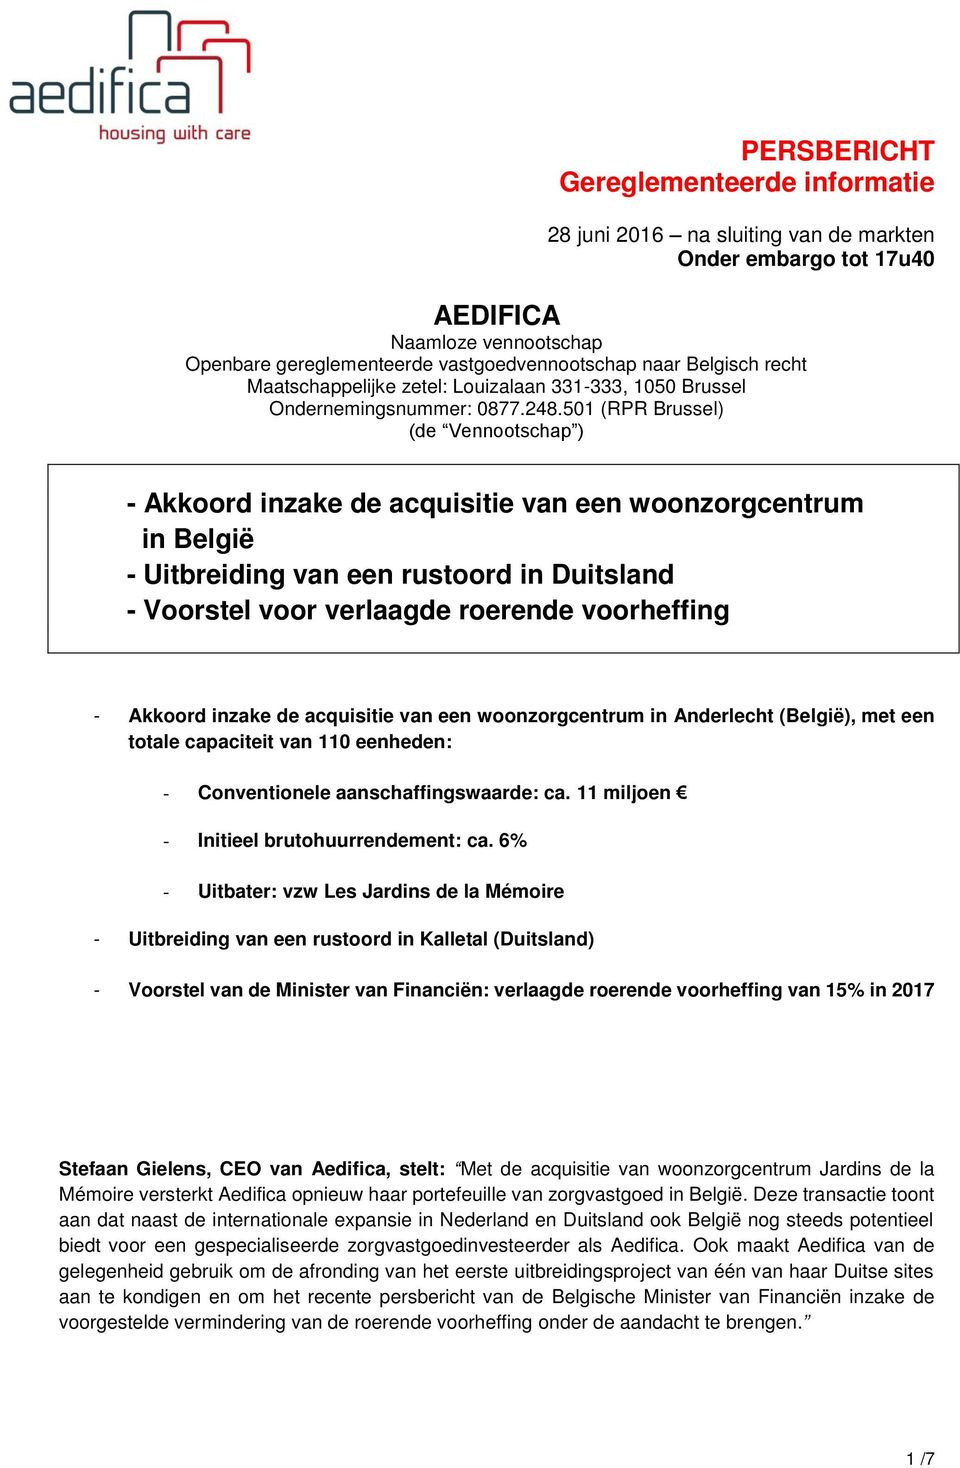 Akkoord inzake de acquisitie van een woonzorgcentrum in Anderlecht (België), met een totale capaciteit van 110 eenheden: - Conventionele aanschaffingswaarde: ca.